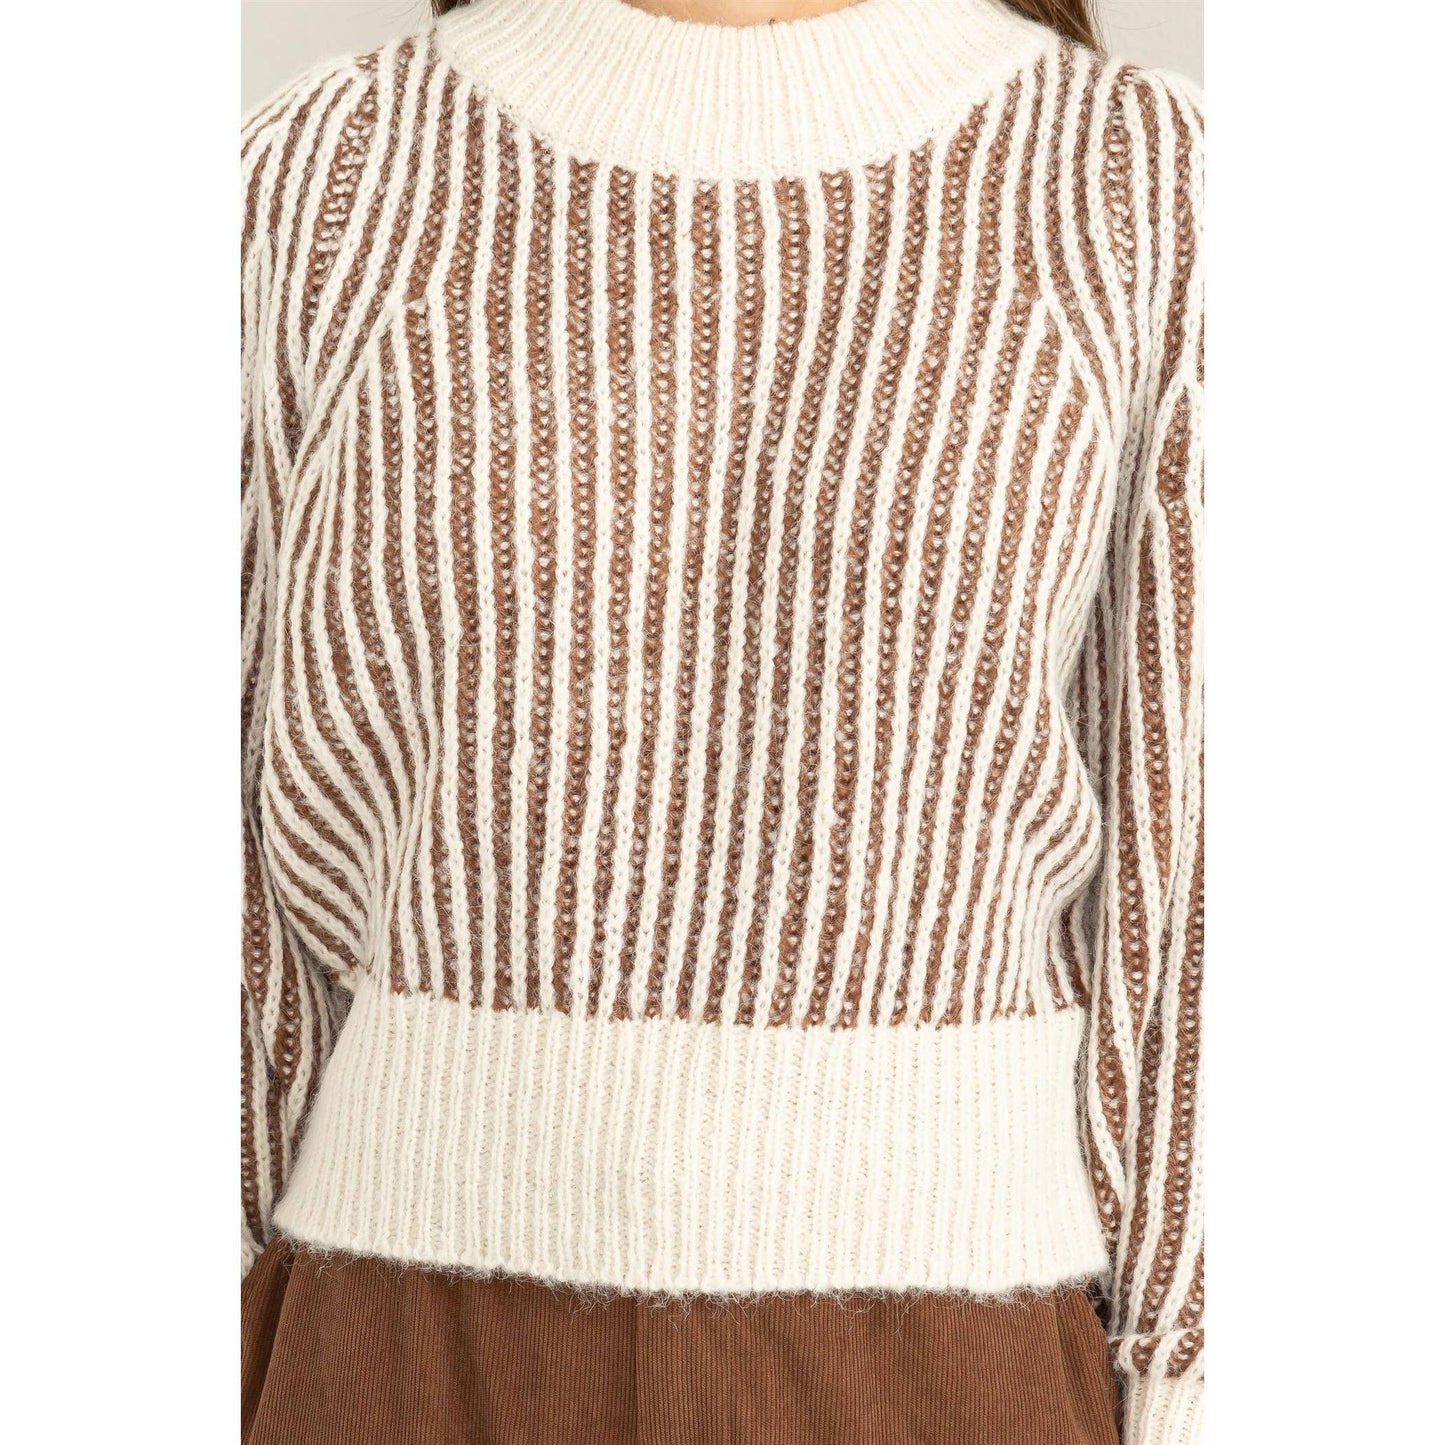 Cream and Mocha Dreamer Striped Sweater